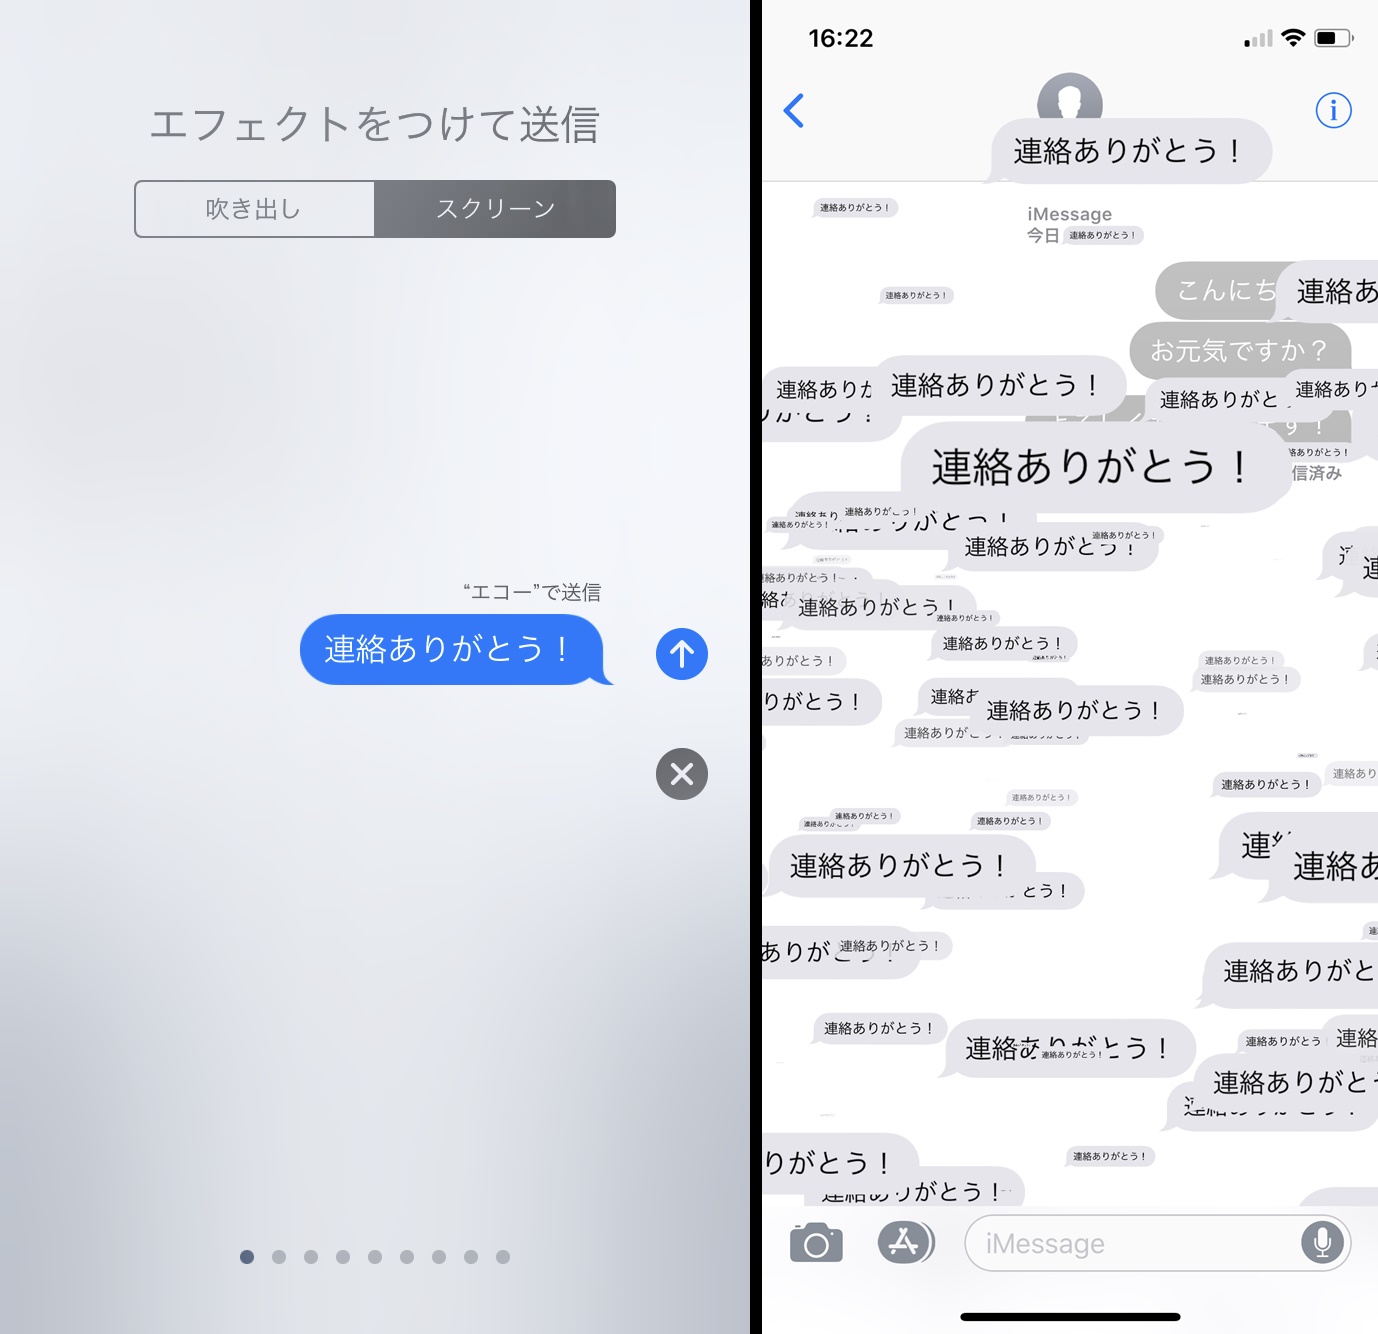 Ios 11はimessageのデコレーション機能がさらに拡大 友達とのやり取りがより華やかに Iphone Tips Engadget 日本版